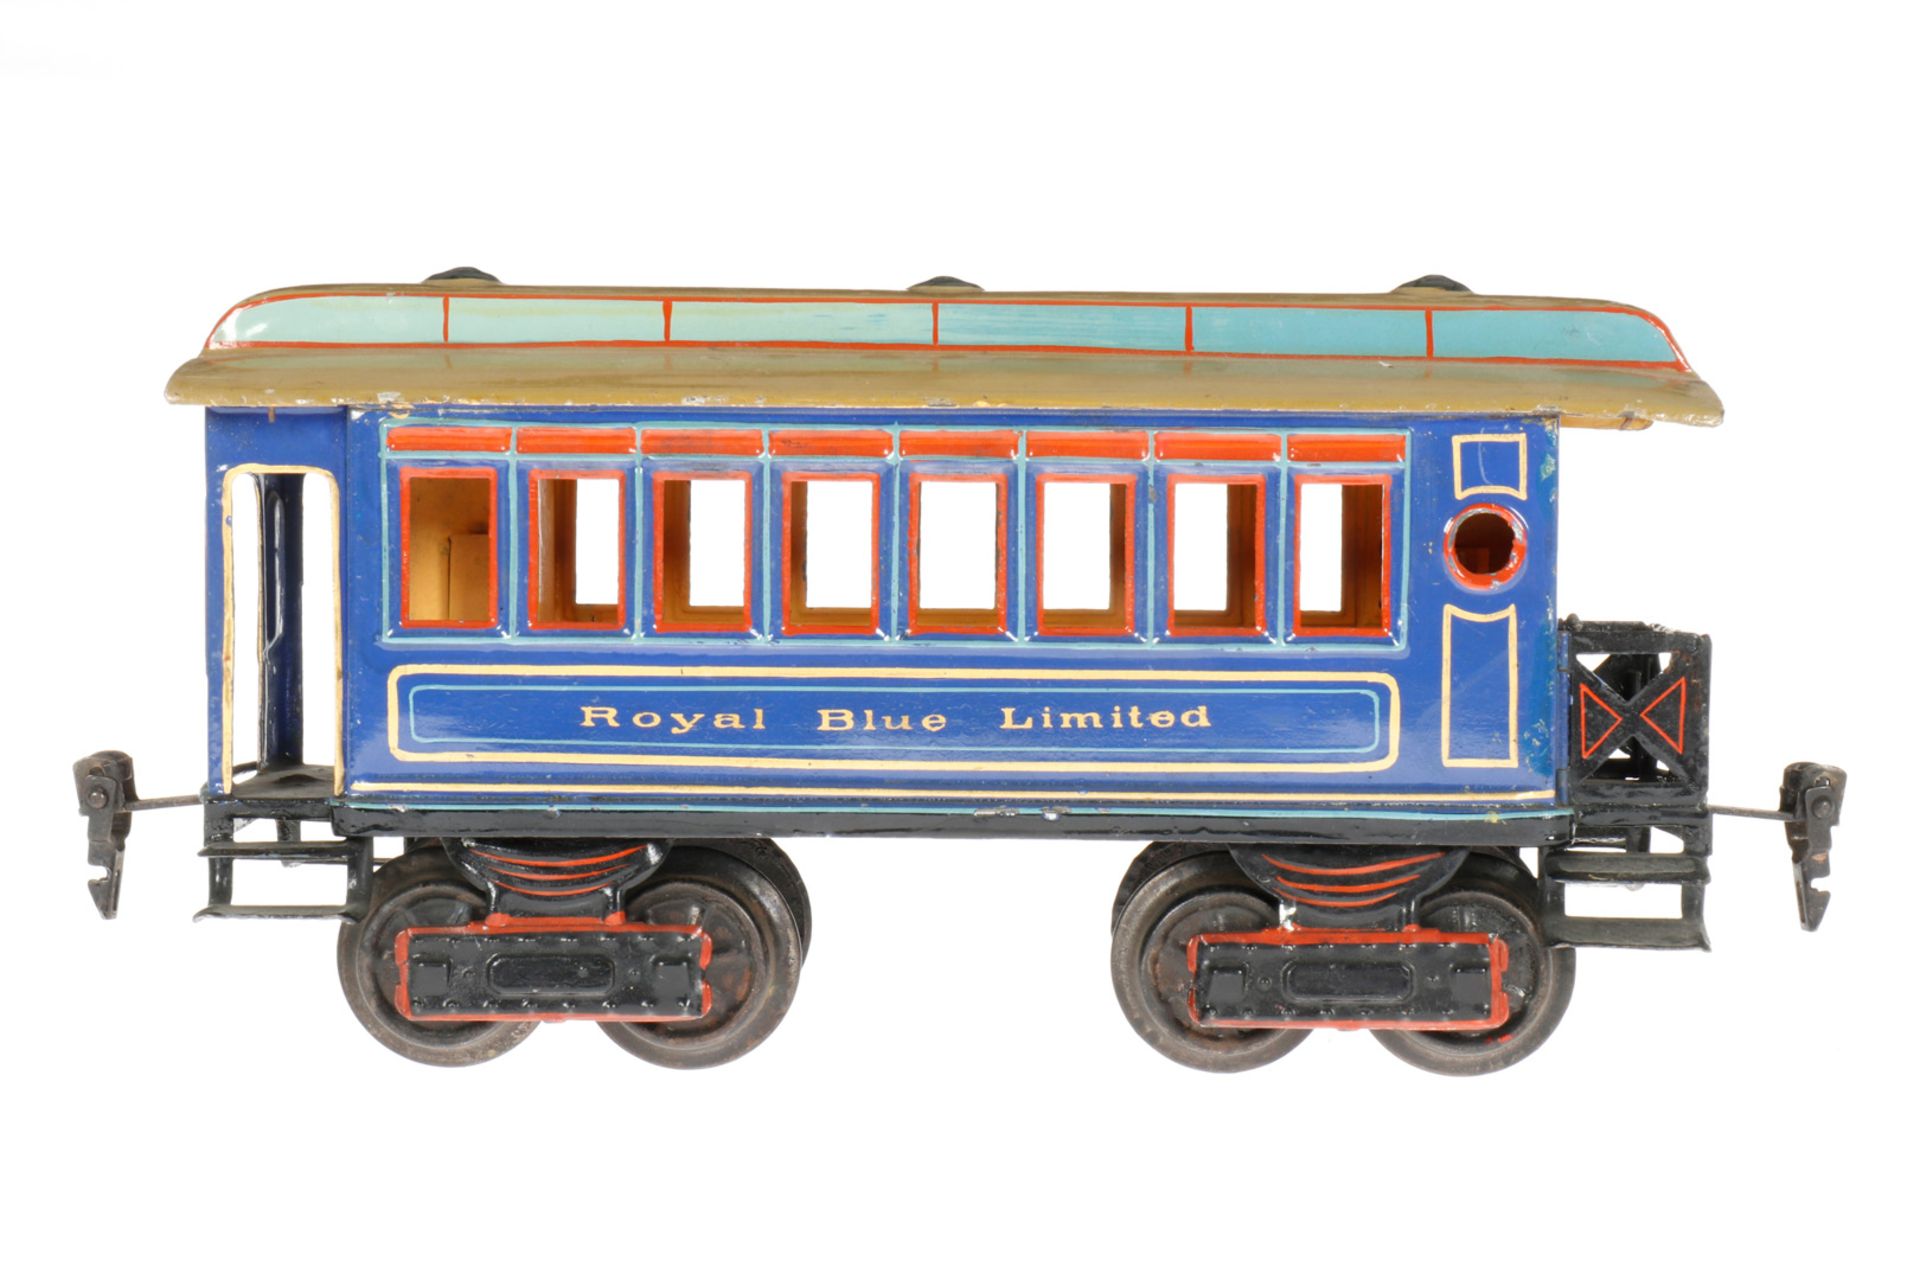 Märklin amerikanischer Personenwagen “Royal Blue Limited“ 1882, S 1, uralt, blau, HL, mit 2